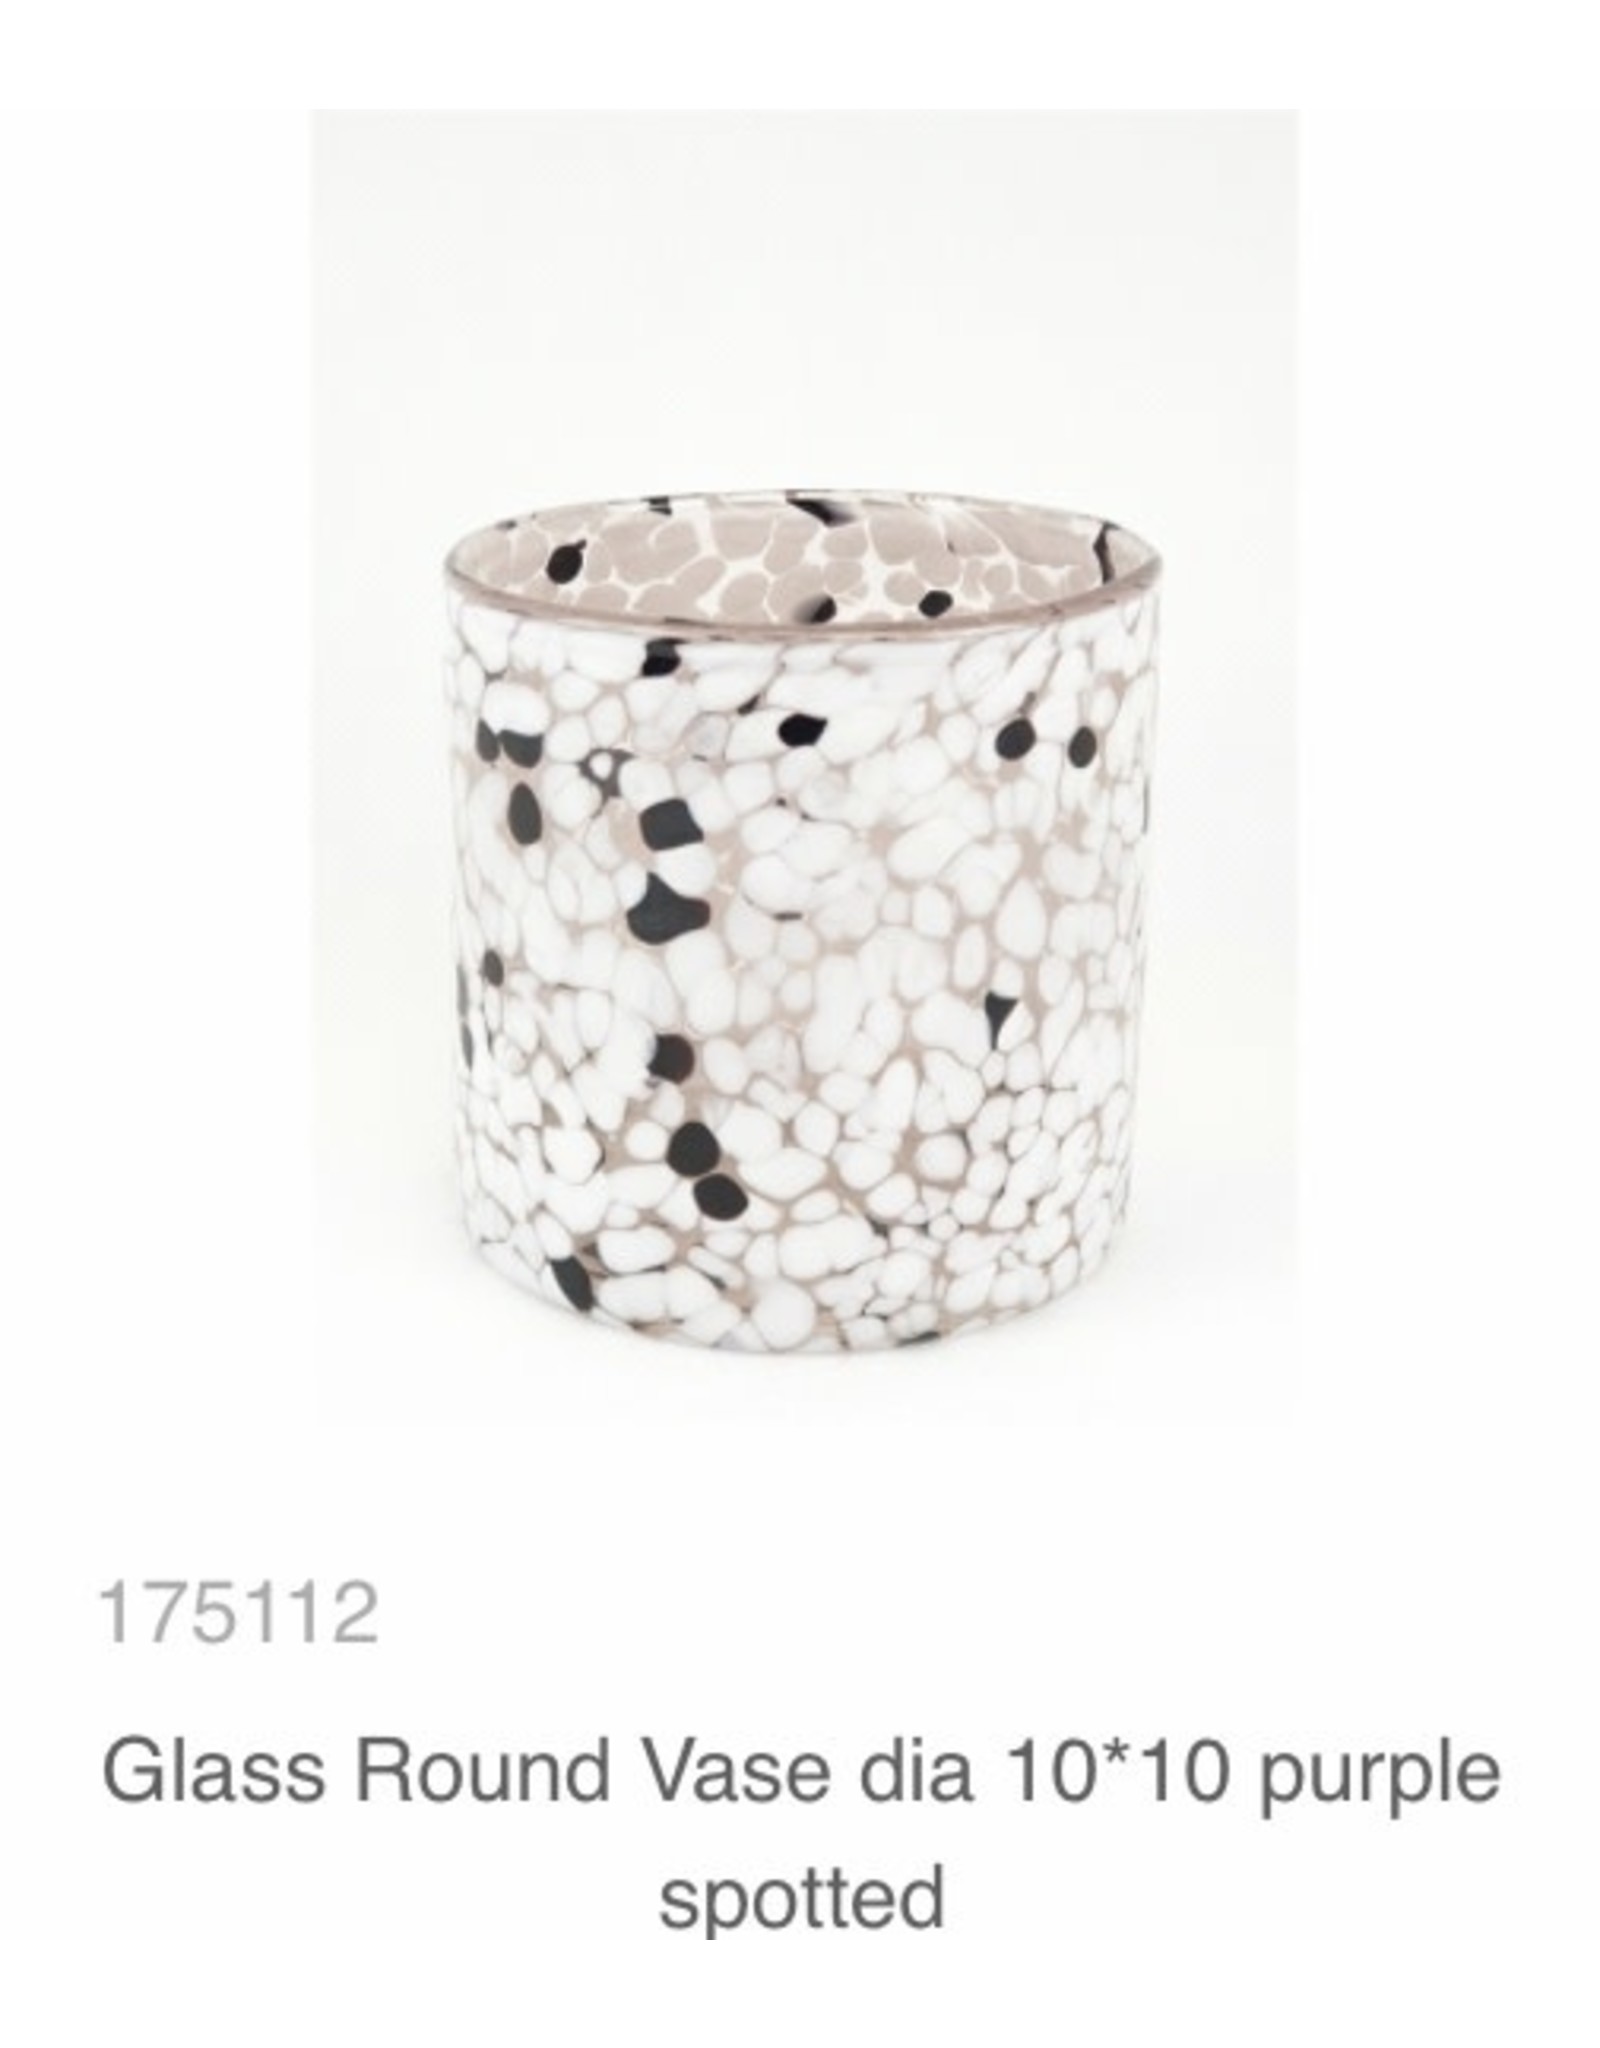 MANSION Glass Round Vase/ windlicht dia 10*10 purple spotted